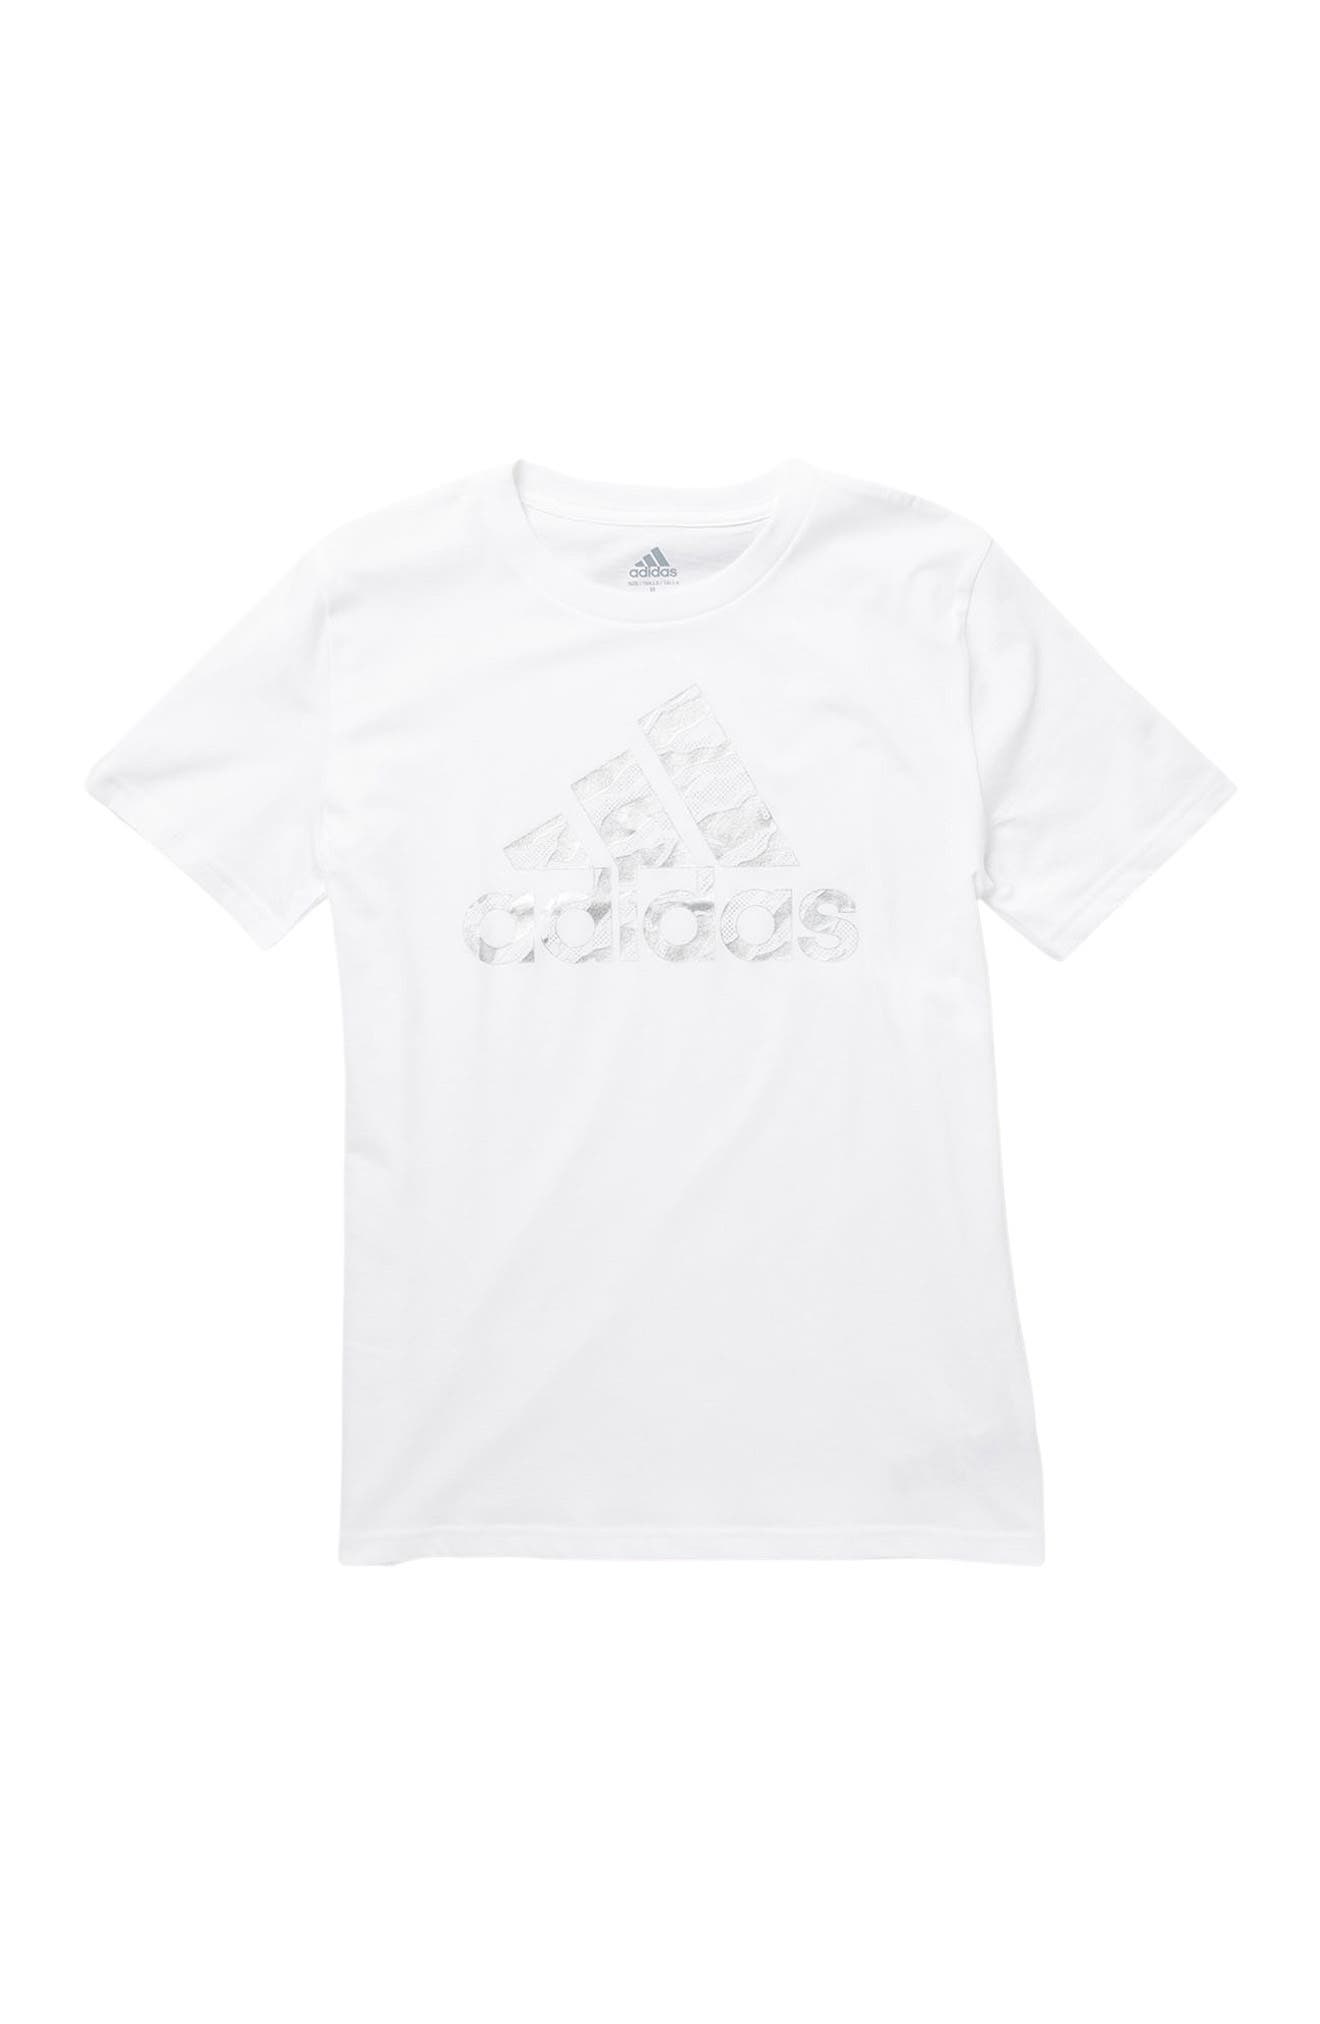 Adidas Originals Kids' Short Sleeve Cotton T-shirt In White